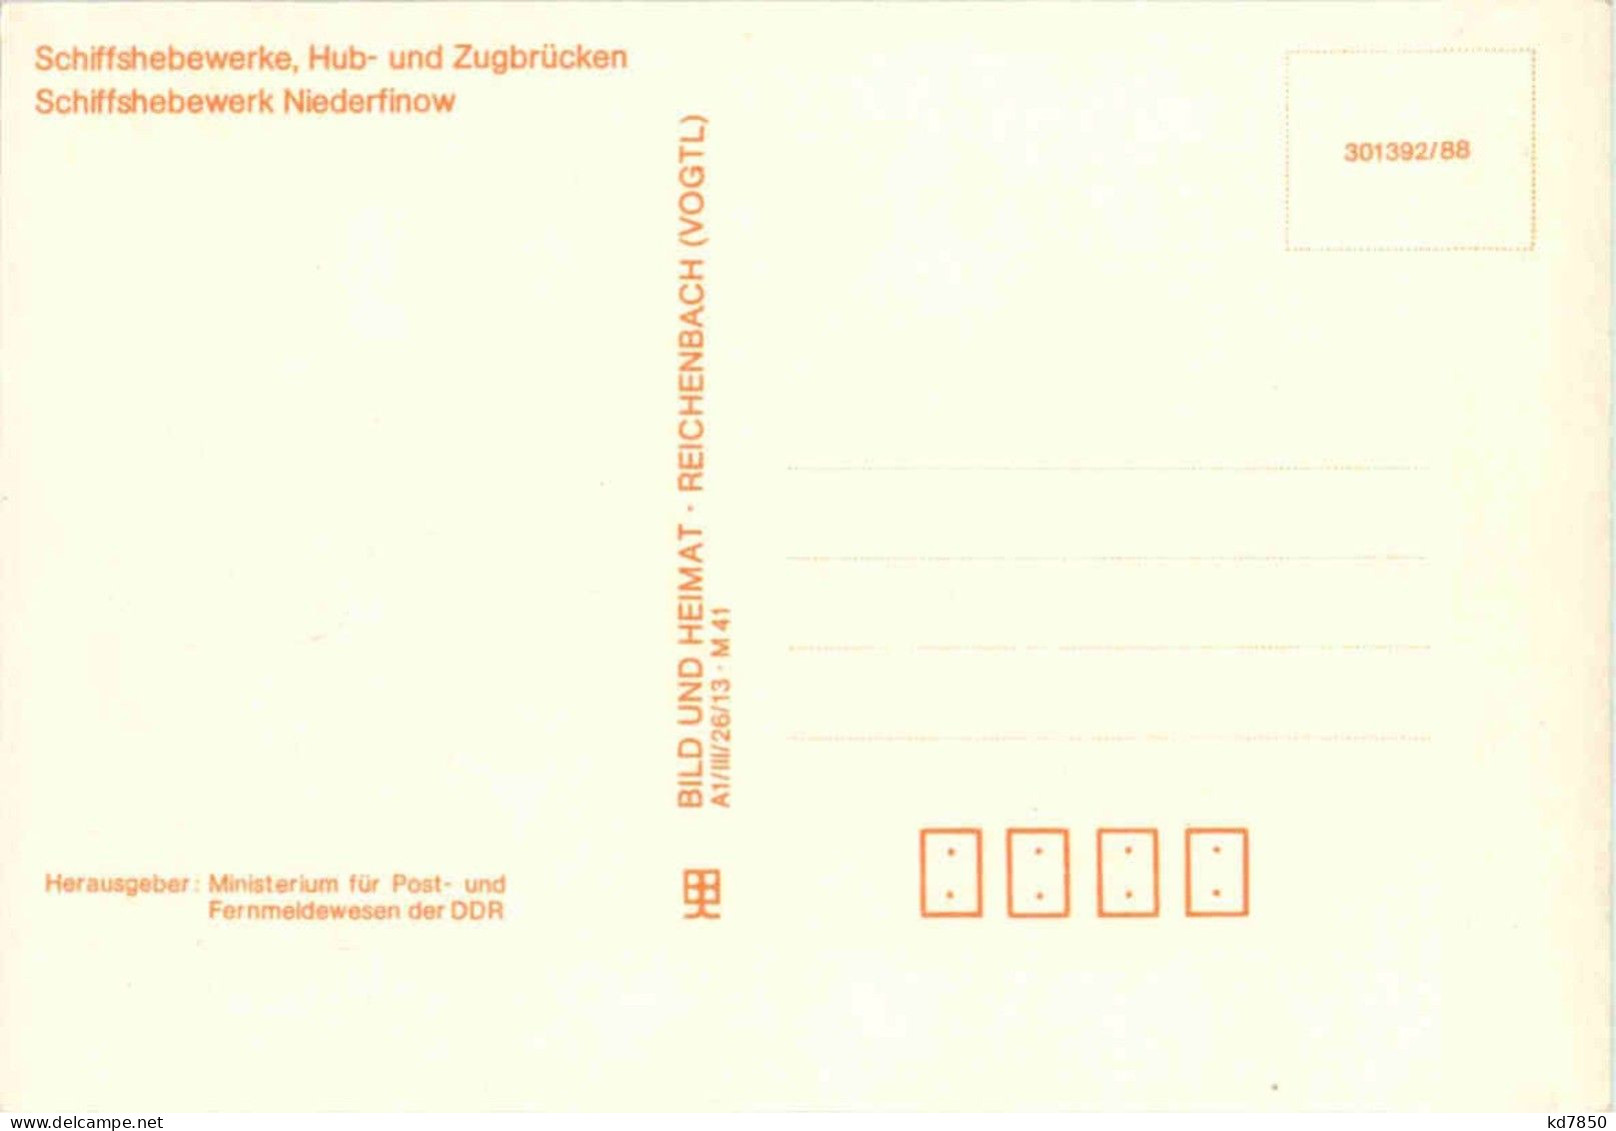 DDR - Maximum Card - Cartes-Maximum (CM)